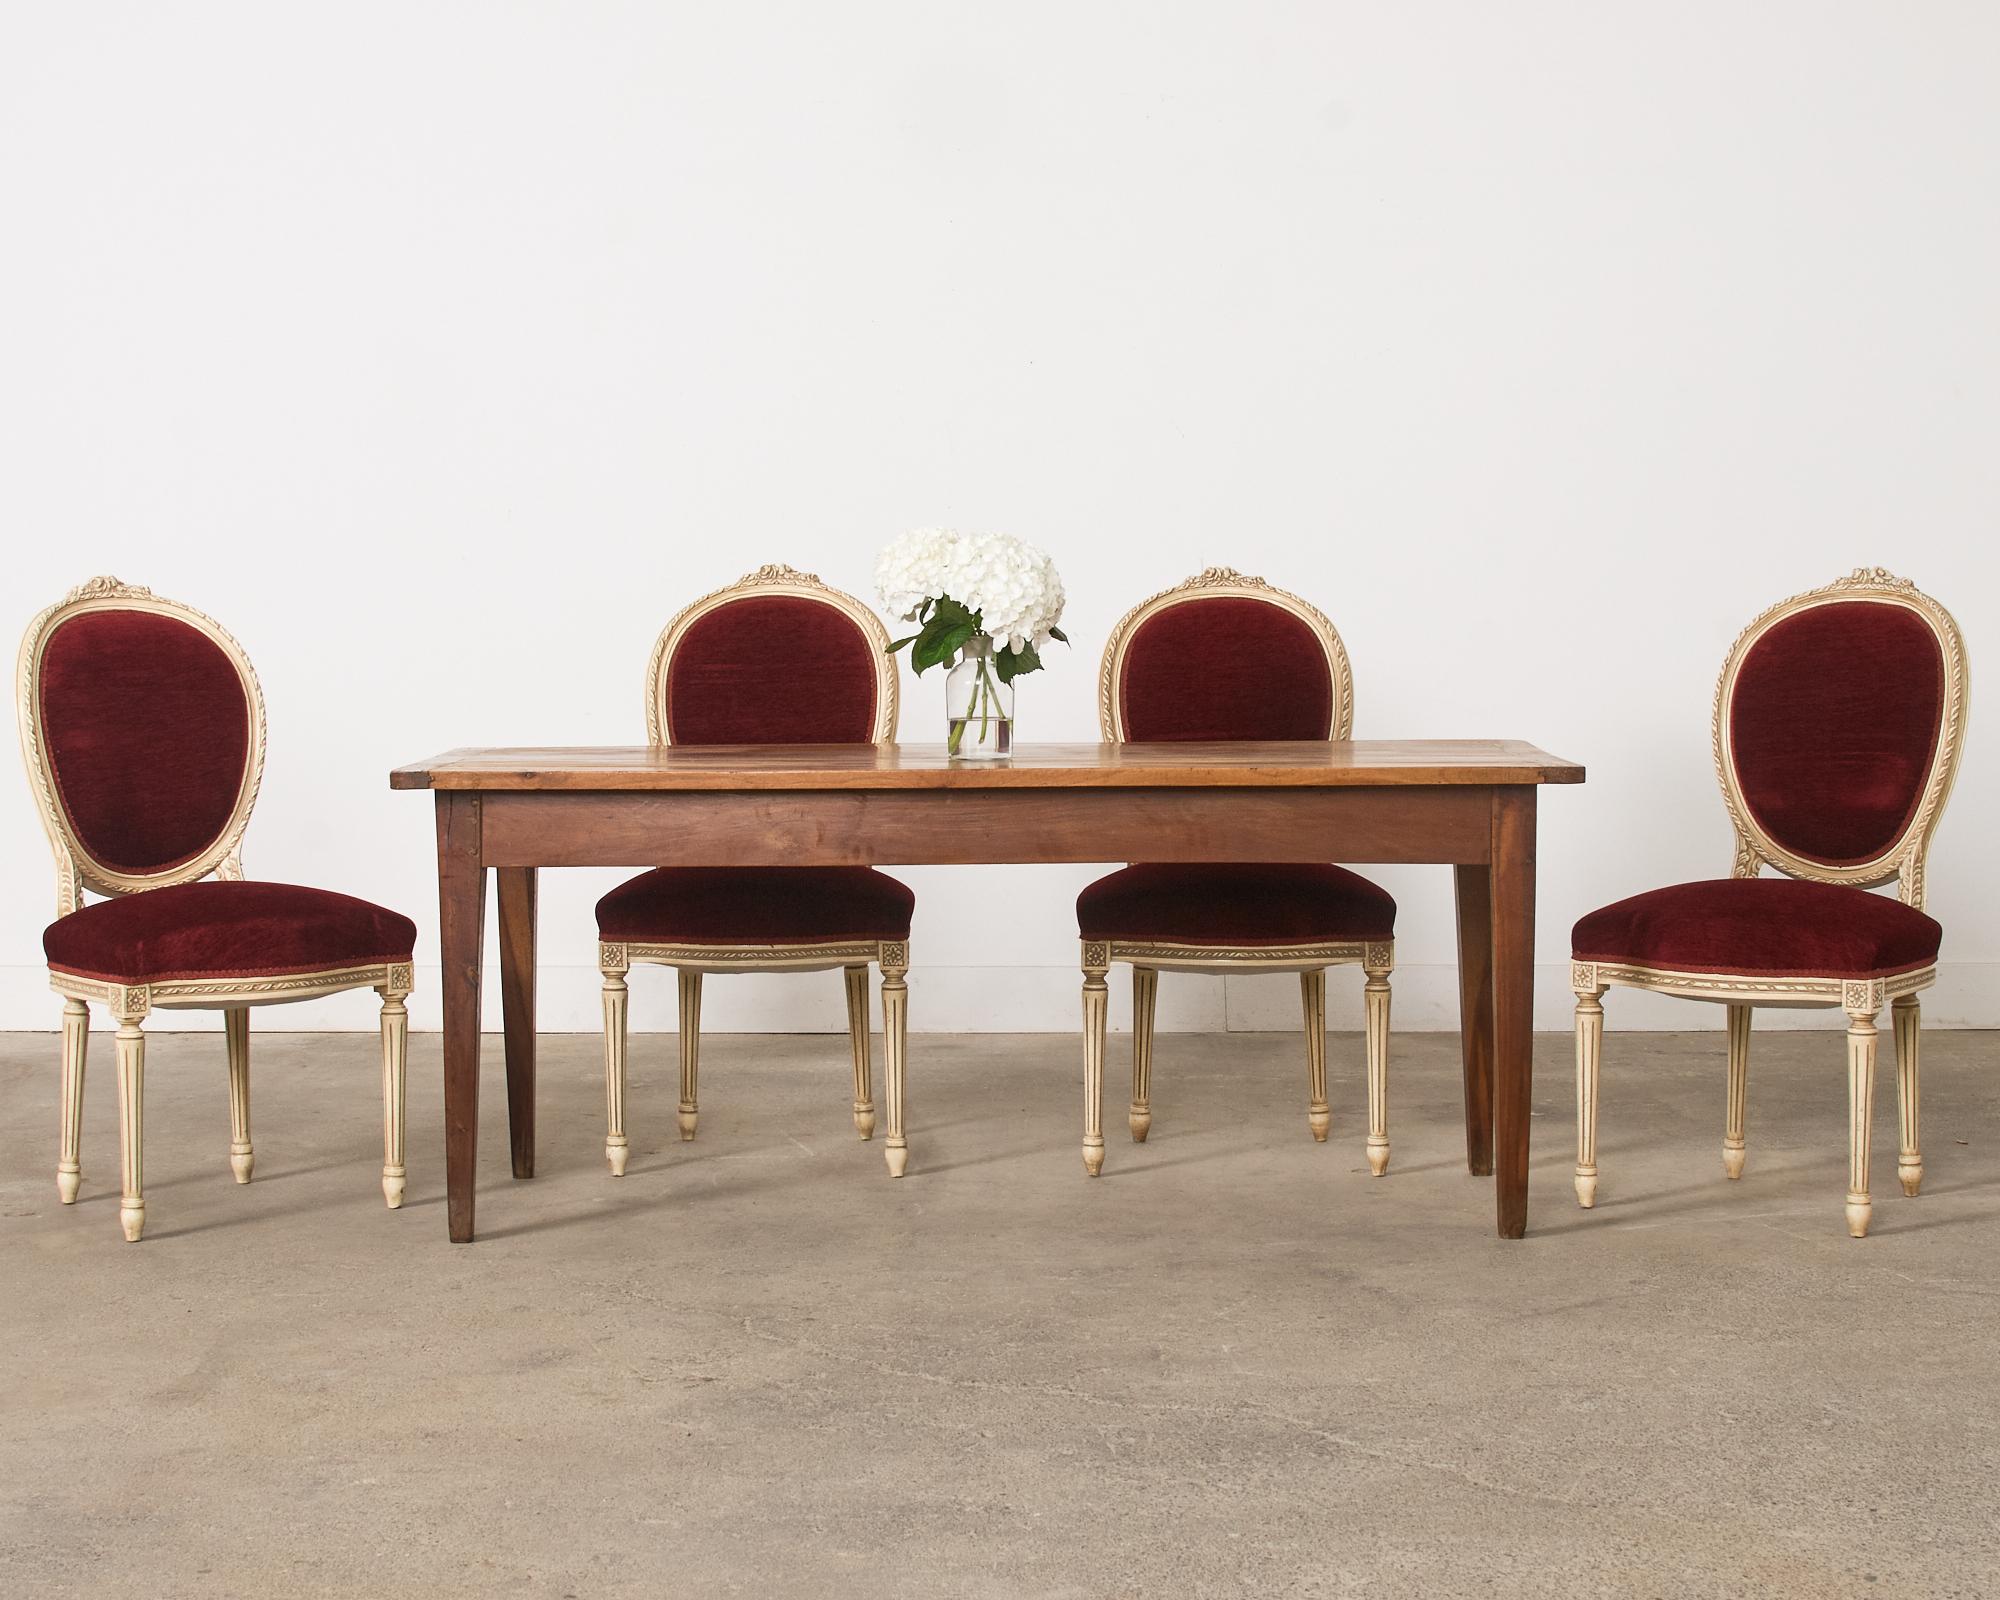 Superbe ensemble de quatre chaises de salle à manger en laque peinte, réalisées dans le grand style Louis XVI français. Les chaises sont dotées d'un cadre magnifiquement sculpté, d'un camée ovale ou d'un dossier en forme de ballon dont le dessus est